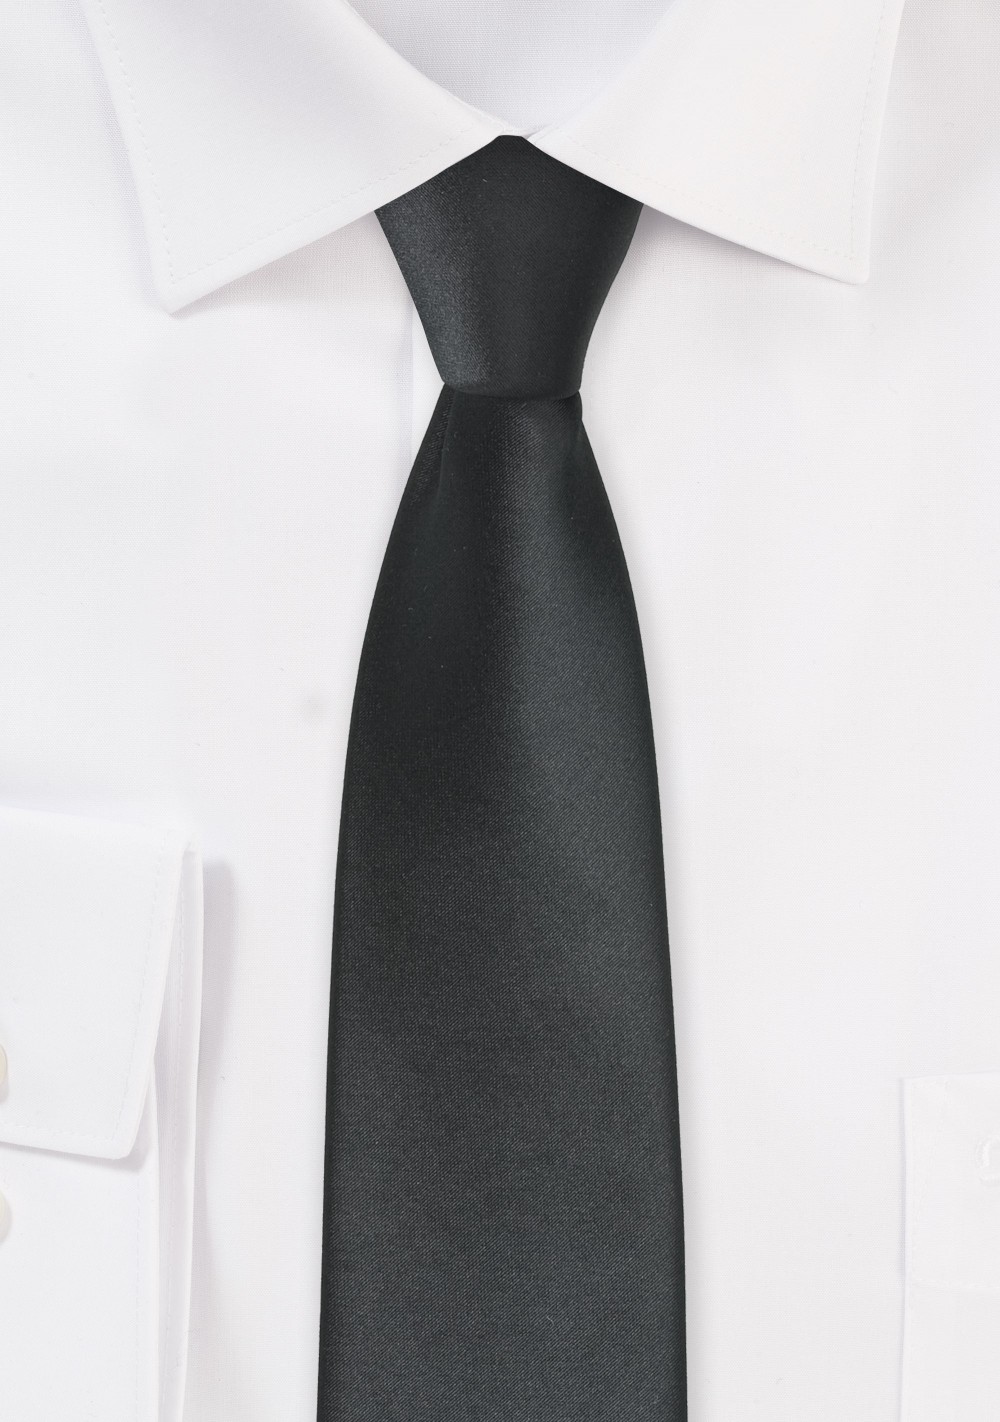 Sleek Black Skinny Tie